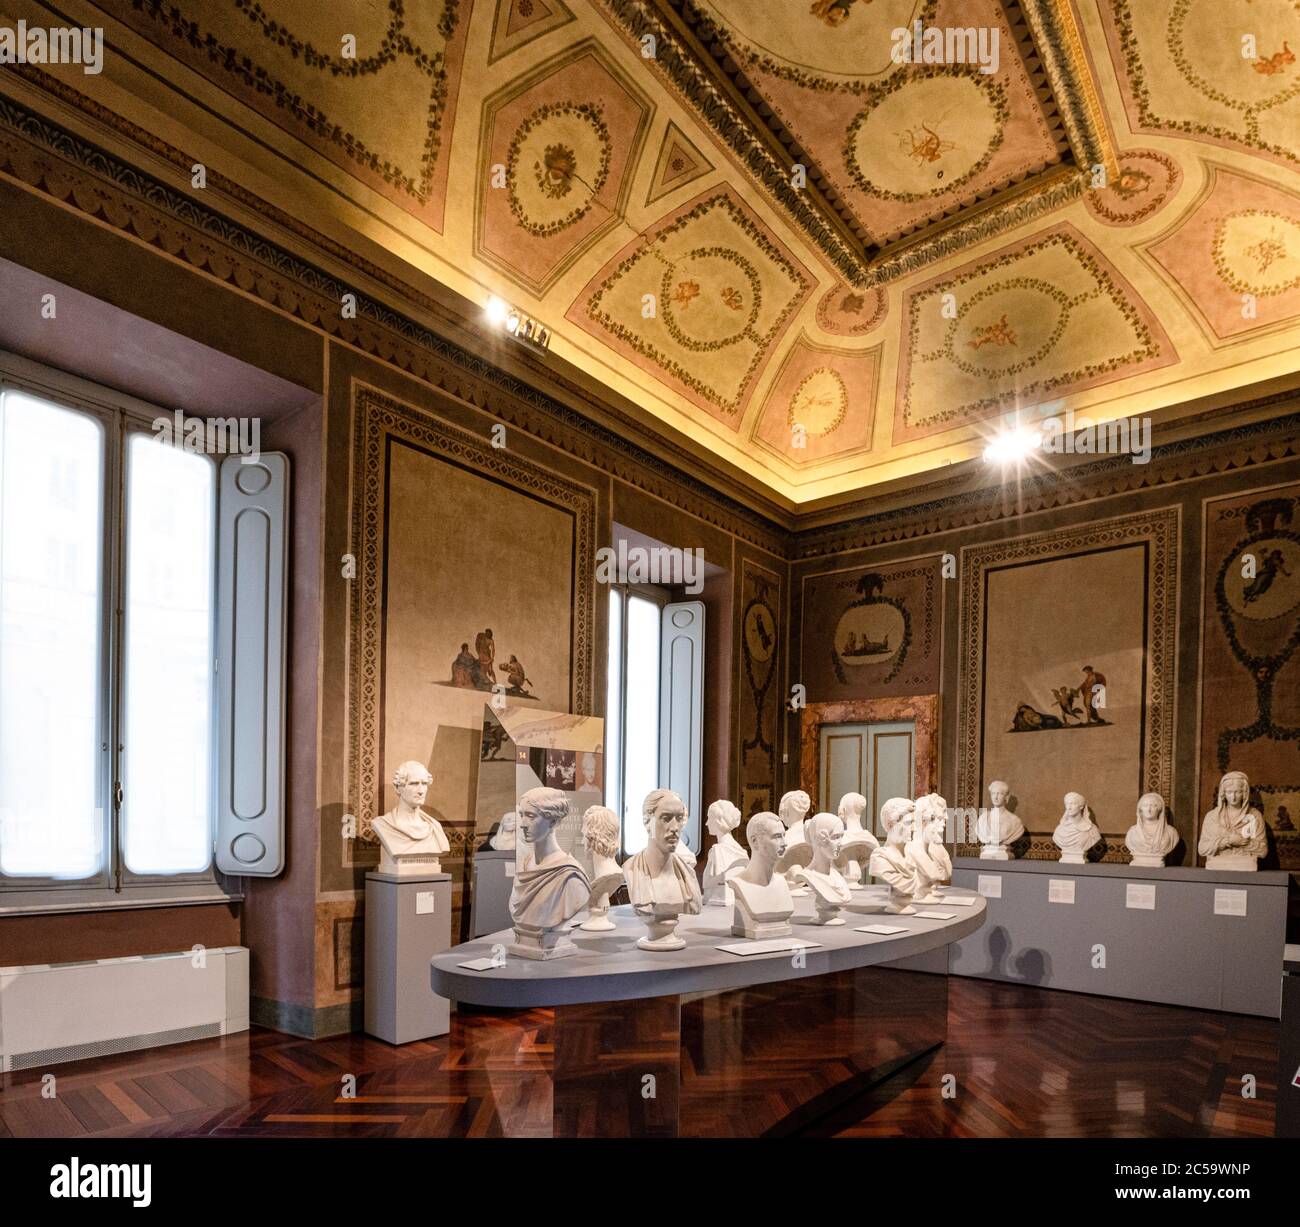 Italien Latium Galerie der Büsten von Persönlichkeiten der Zeit in Gips von Pietro Tenerani geschnitzt, im 2. Stock des Palazzo Braschi in Rom Stockfoto